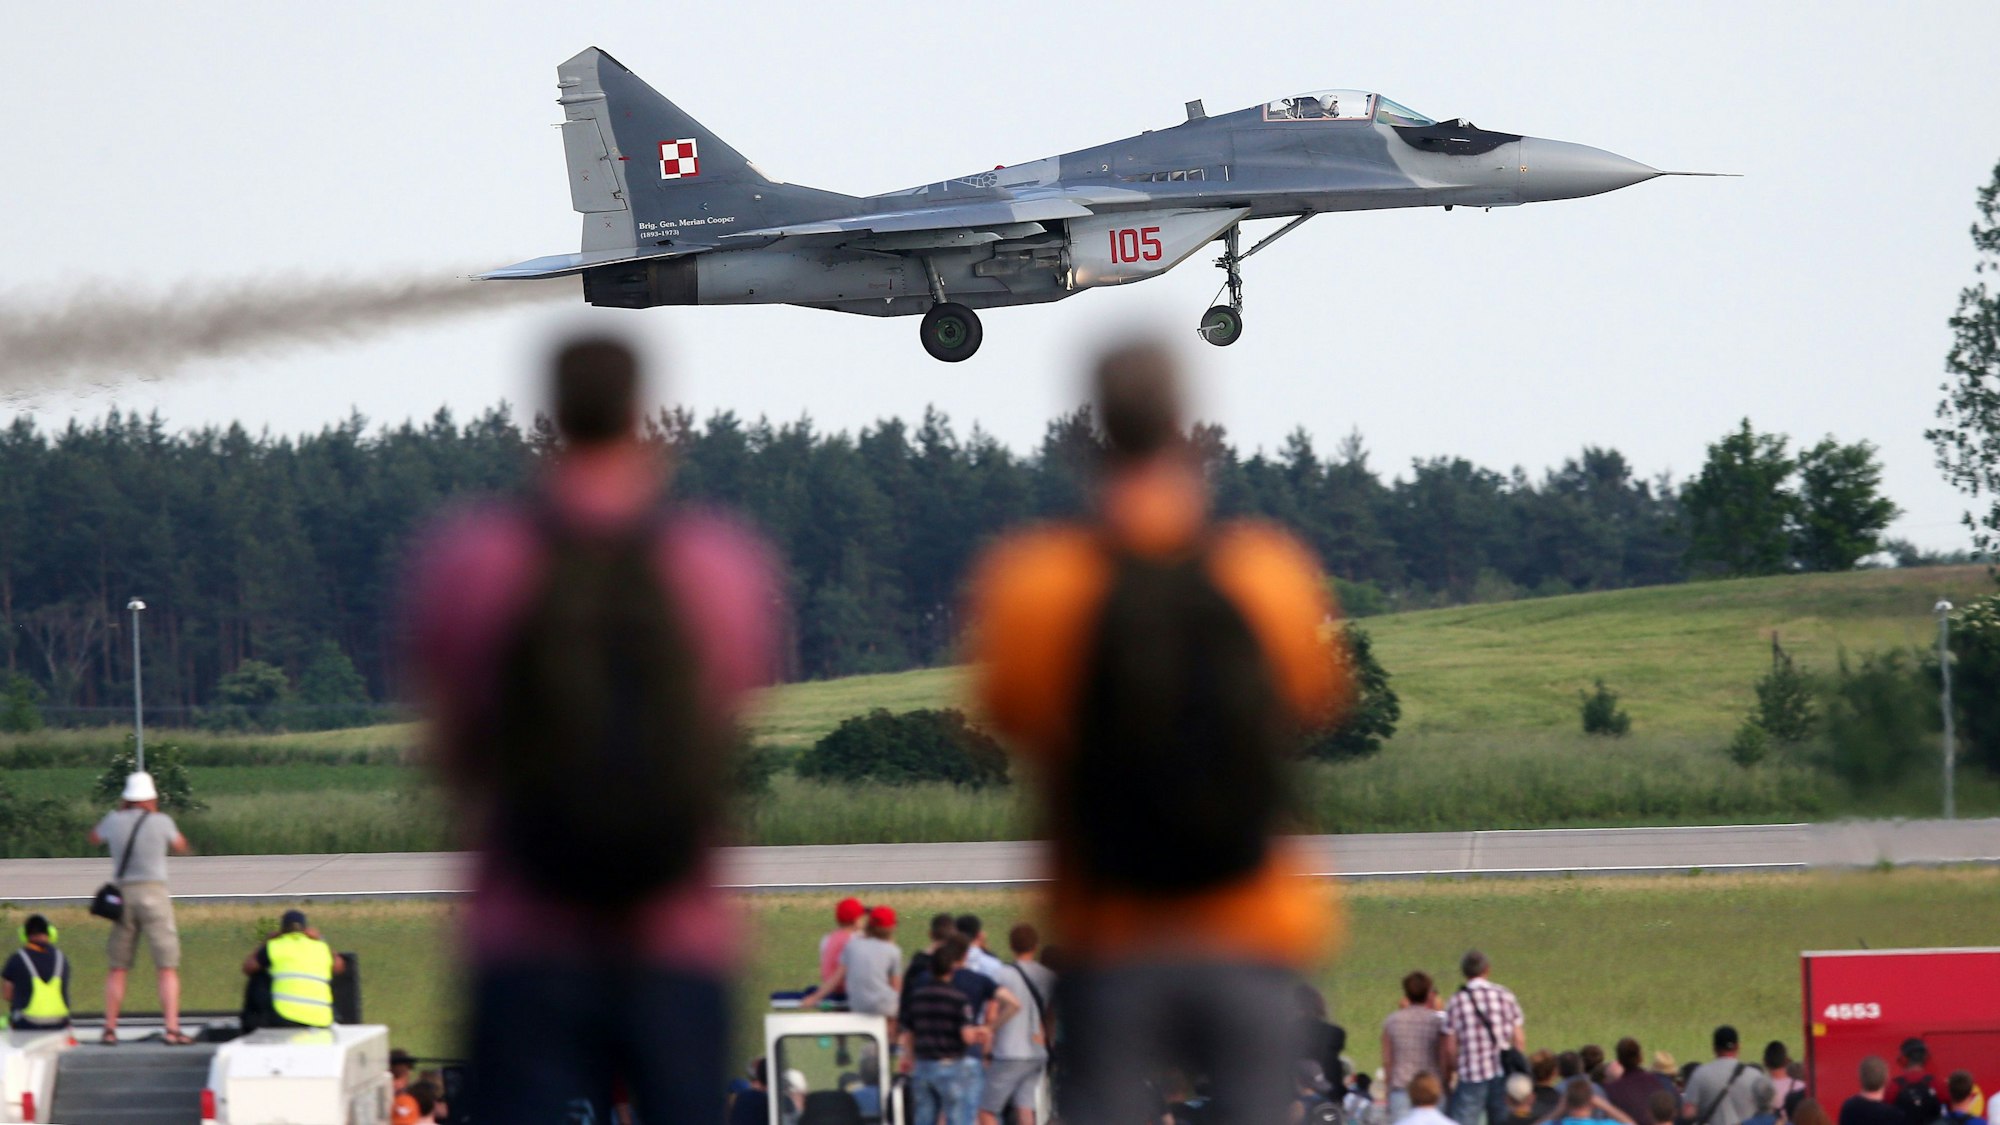 Eine MiG-29 der Polnischen Luftwaffe startet am ersten Besuchertag der Internationalen Luft- und Raumfahrtausstellung (ILA) zu einem Demonstrationsflug.